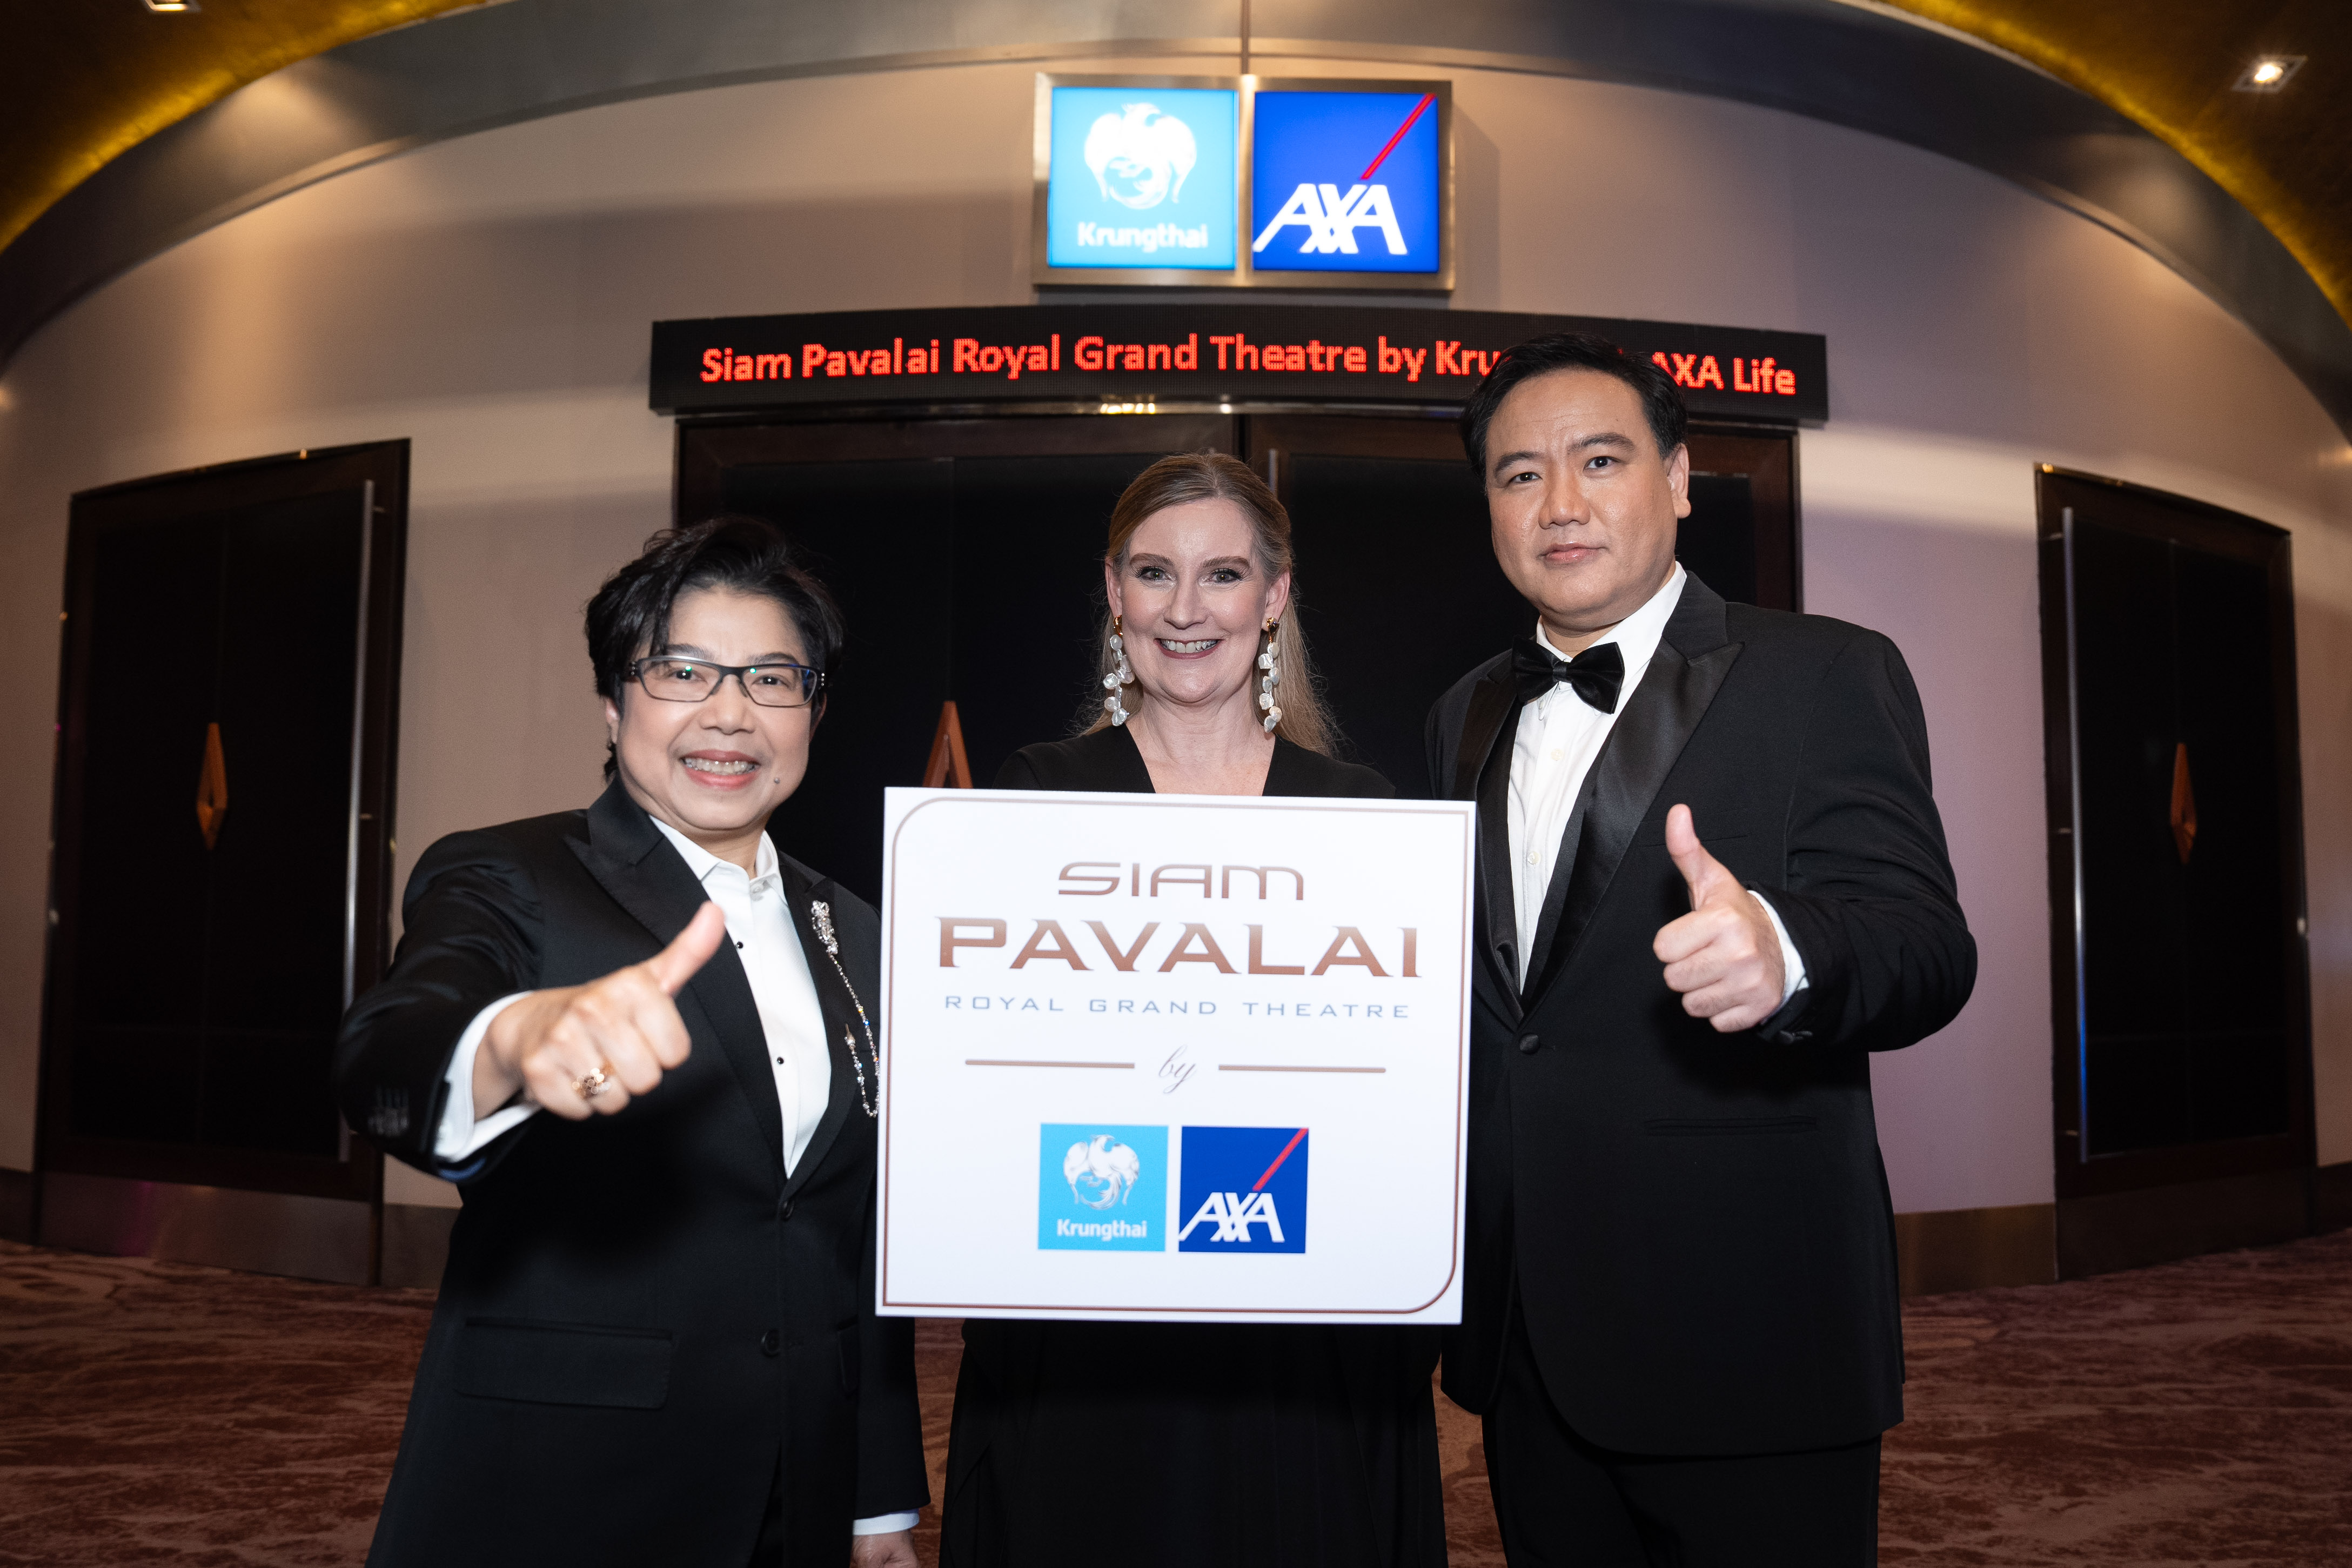 กรุงไทย-แอกซ่า ประกันชีวิต จับมือพันธมิตร เมเจอร์ ซีนีเพล็กซ์ กรุ้ป ชวนสัมผัสความหรูหราระดับเวิลด์คลาสผ่านโรงภาพยนตร์ “Siam Pavalai Royal Grand Theatre by Krungthai-AXA Life”